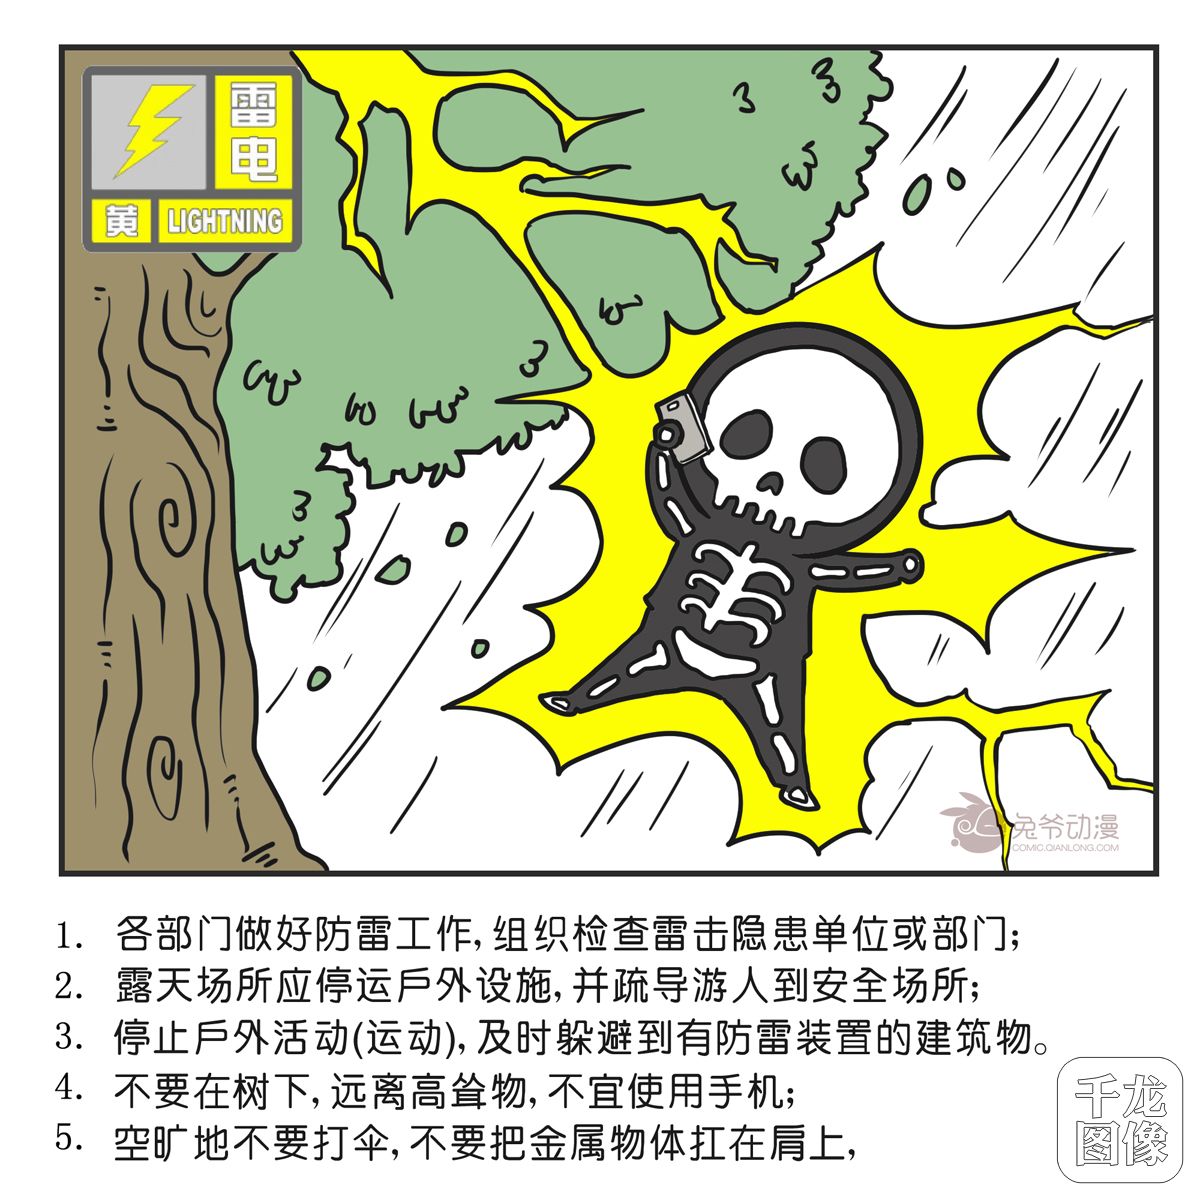 北京市气象台8月13日21时45分发布雷电黄色预警信号